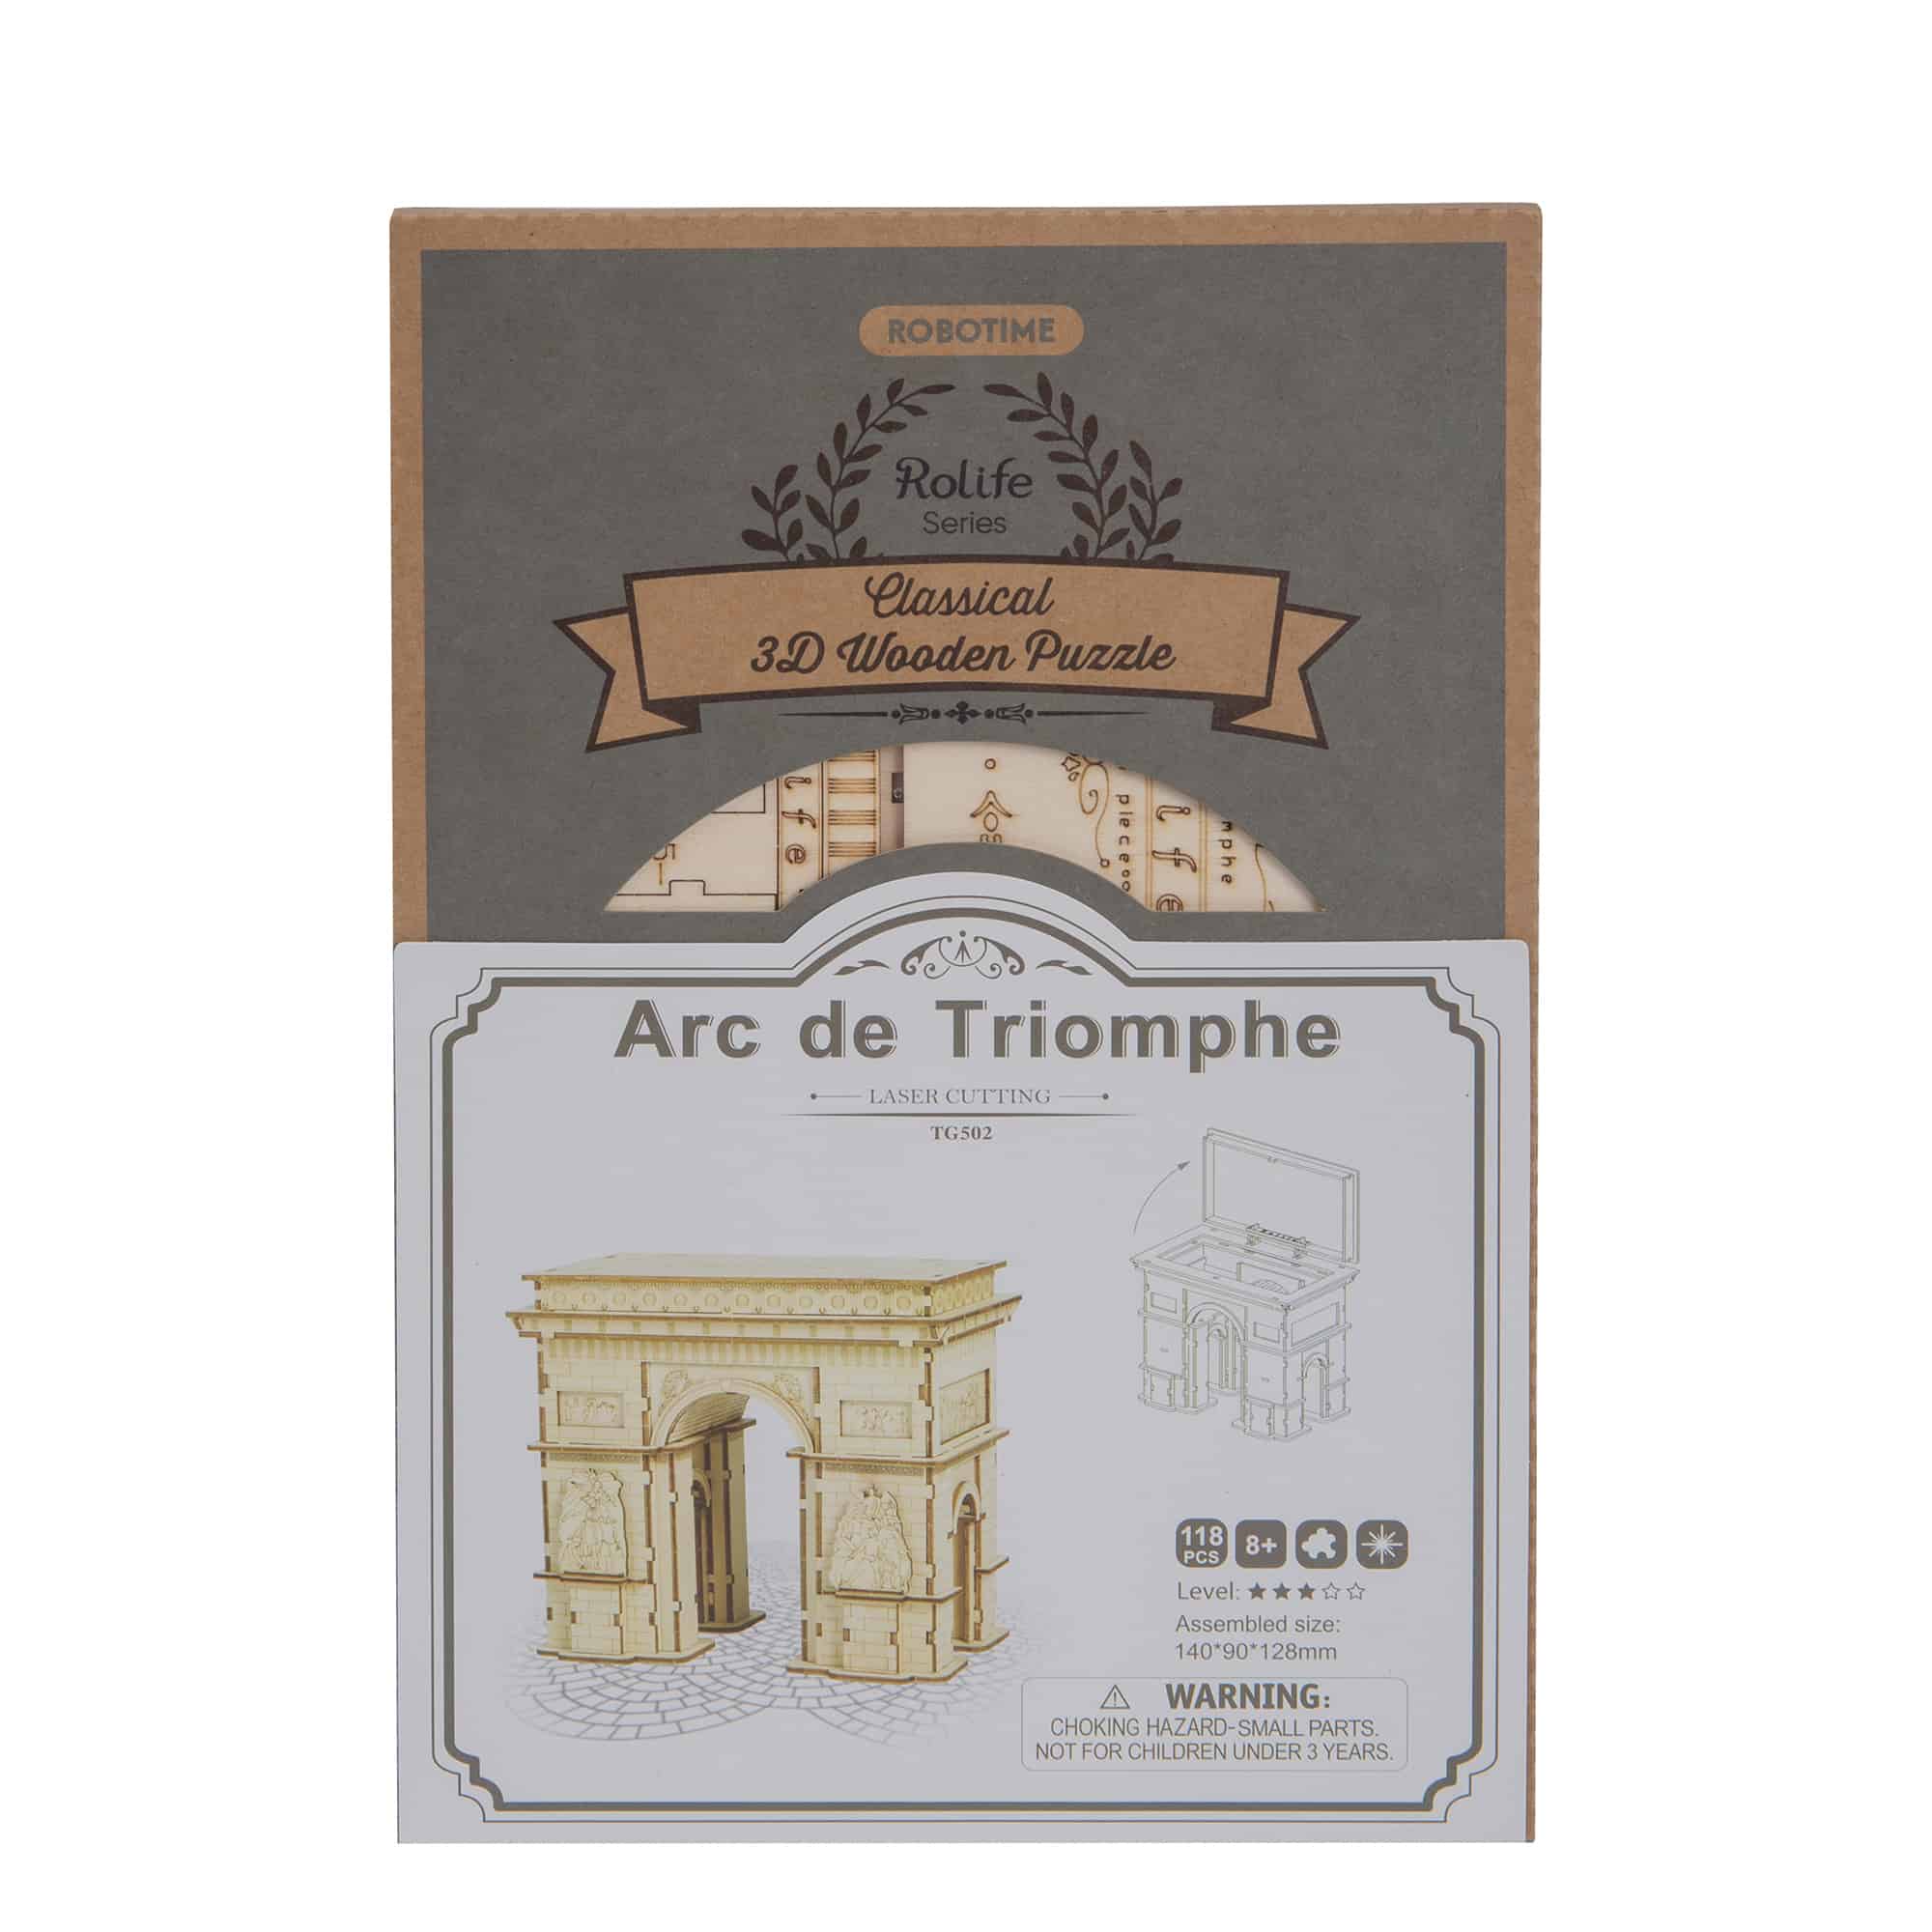 Arc de Triomphe - Puzzle 3D Bois - Robotime 